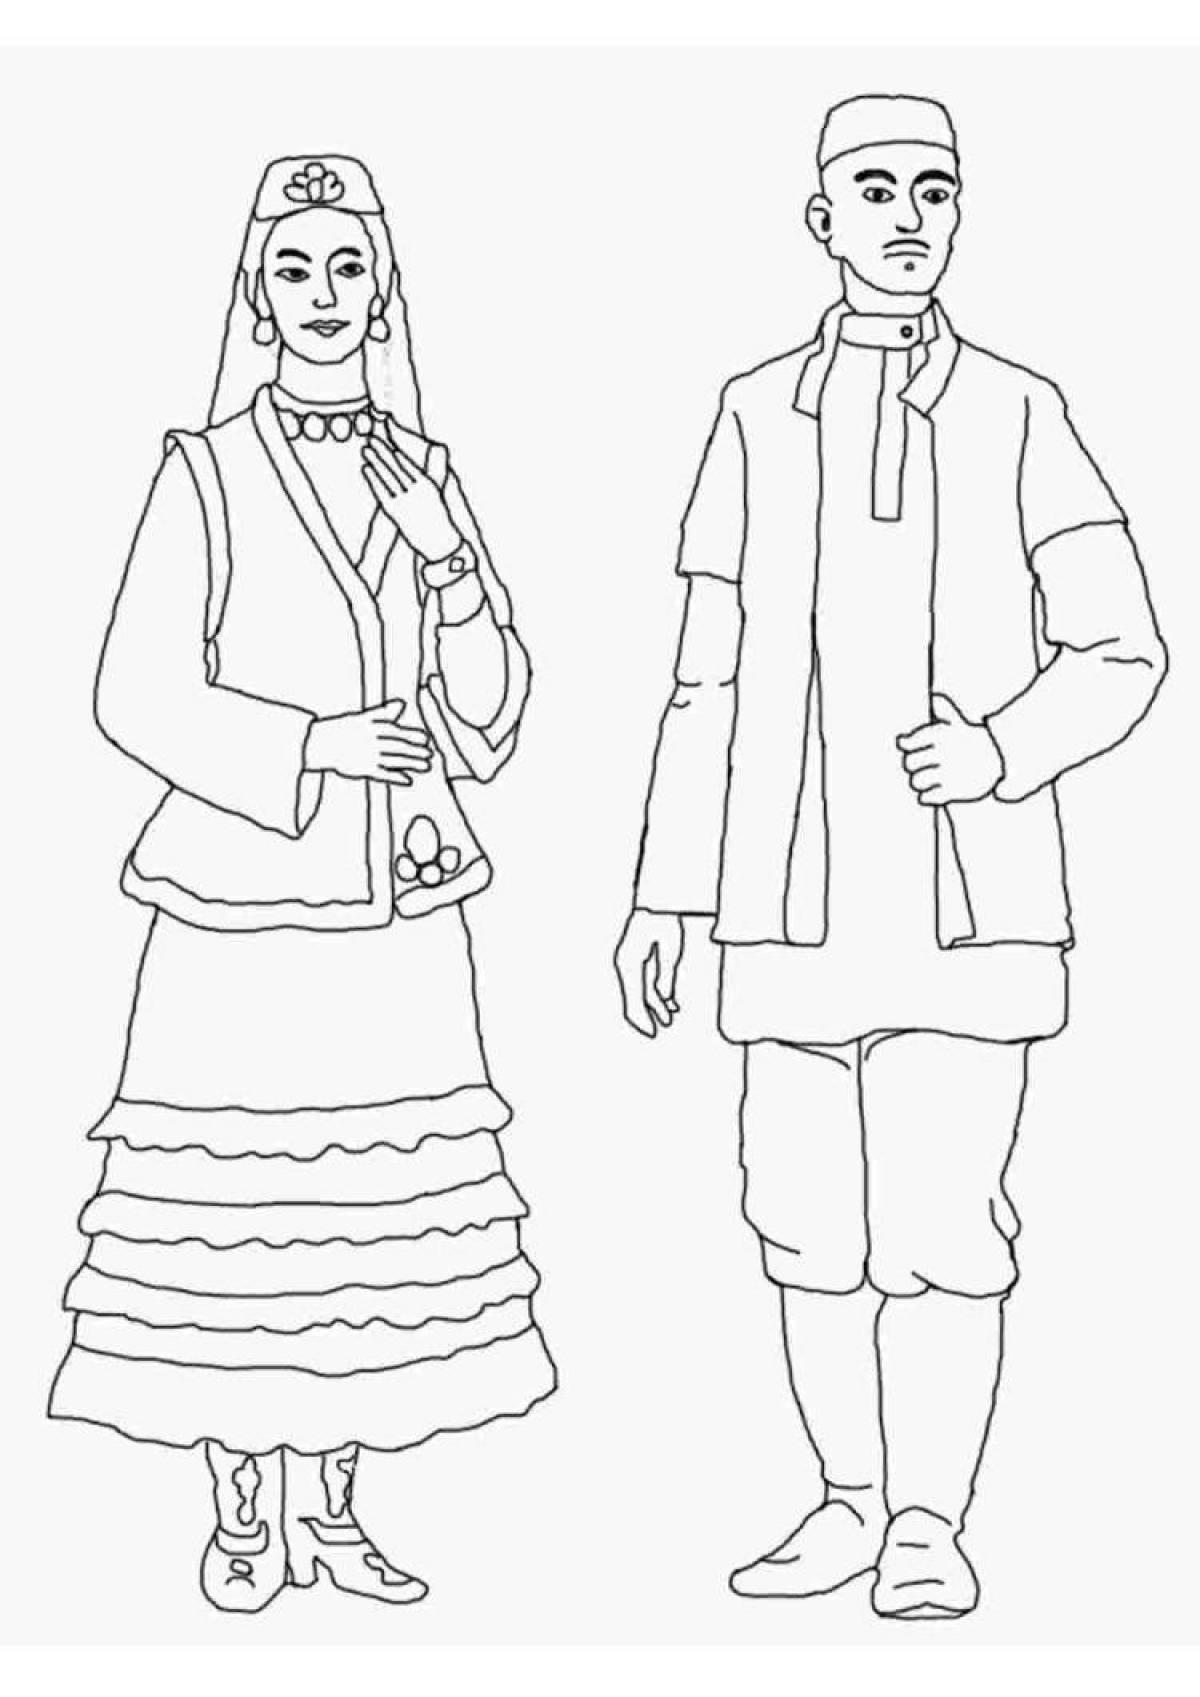 Bashkir national costume for children #2